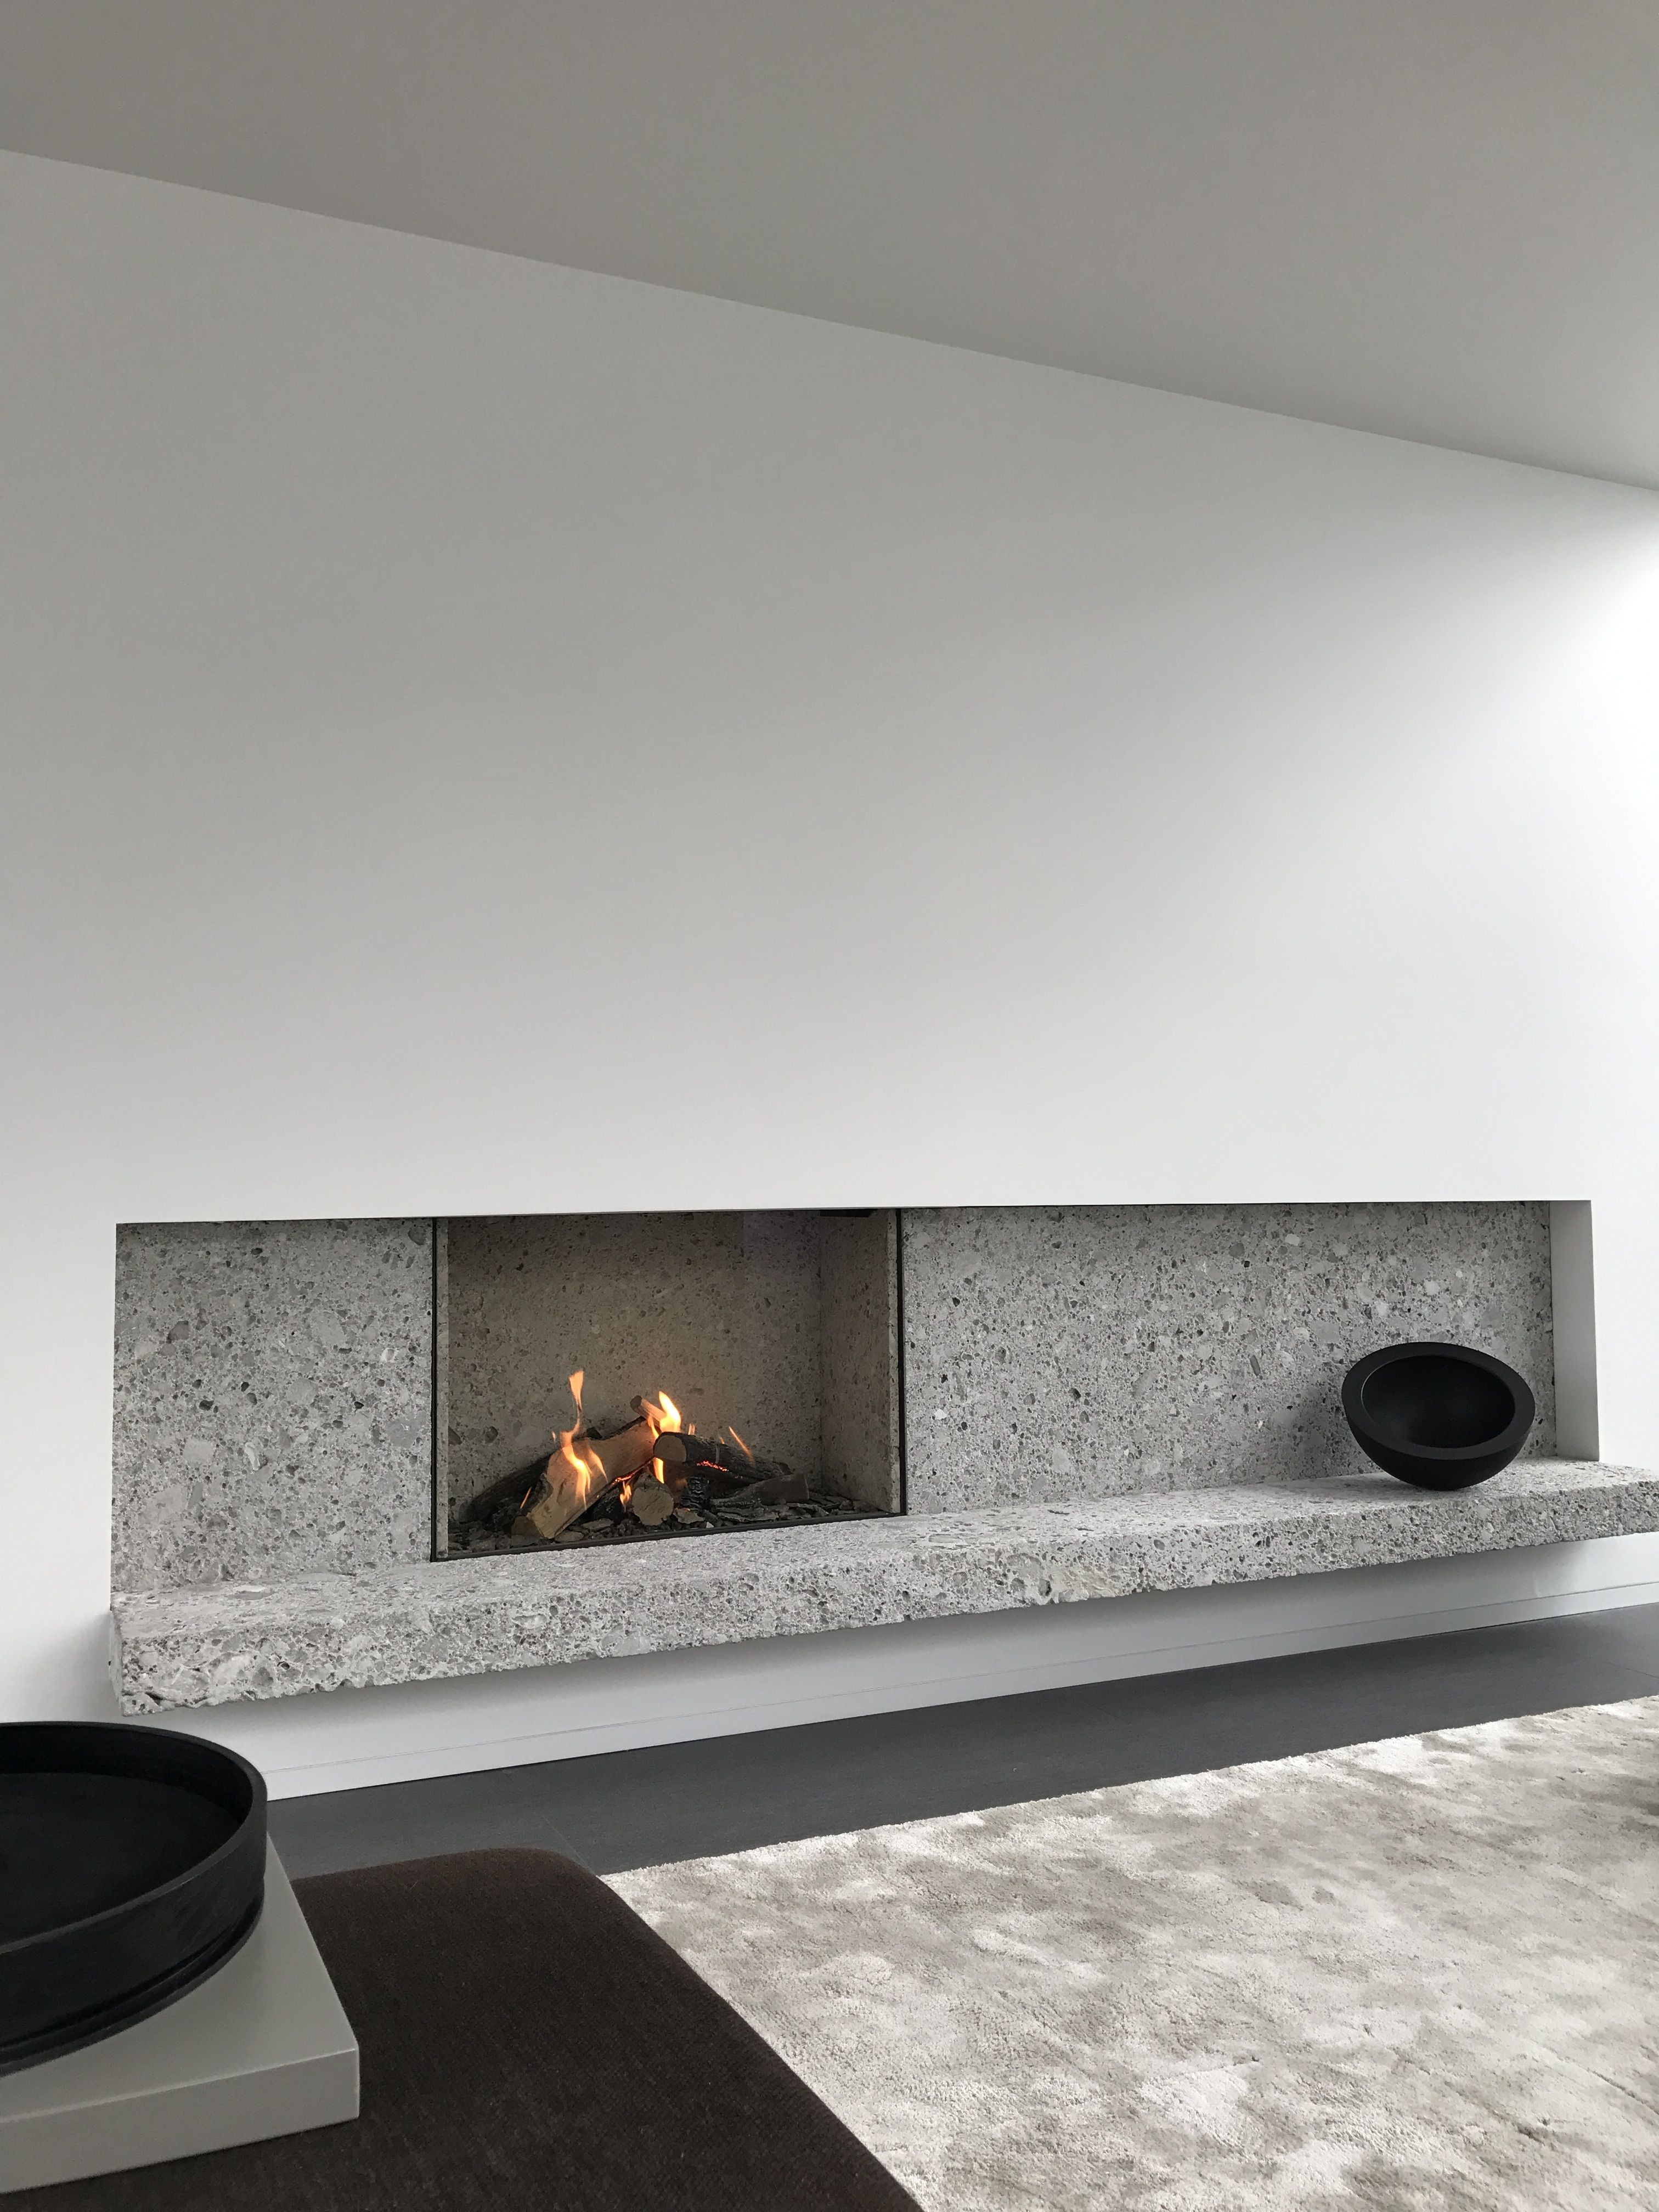 Tile Fireplace Designs Photos Beautiful 24 Glass Tile Fireplace